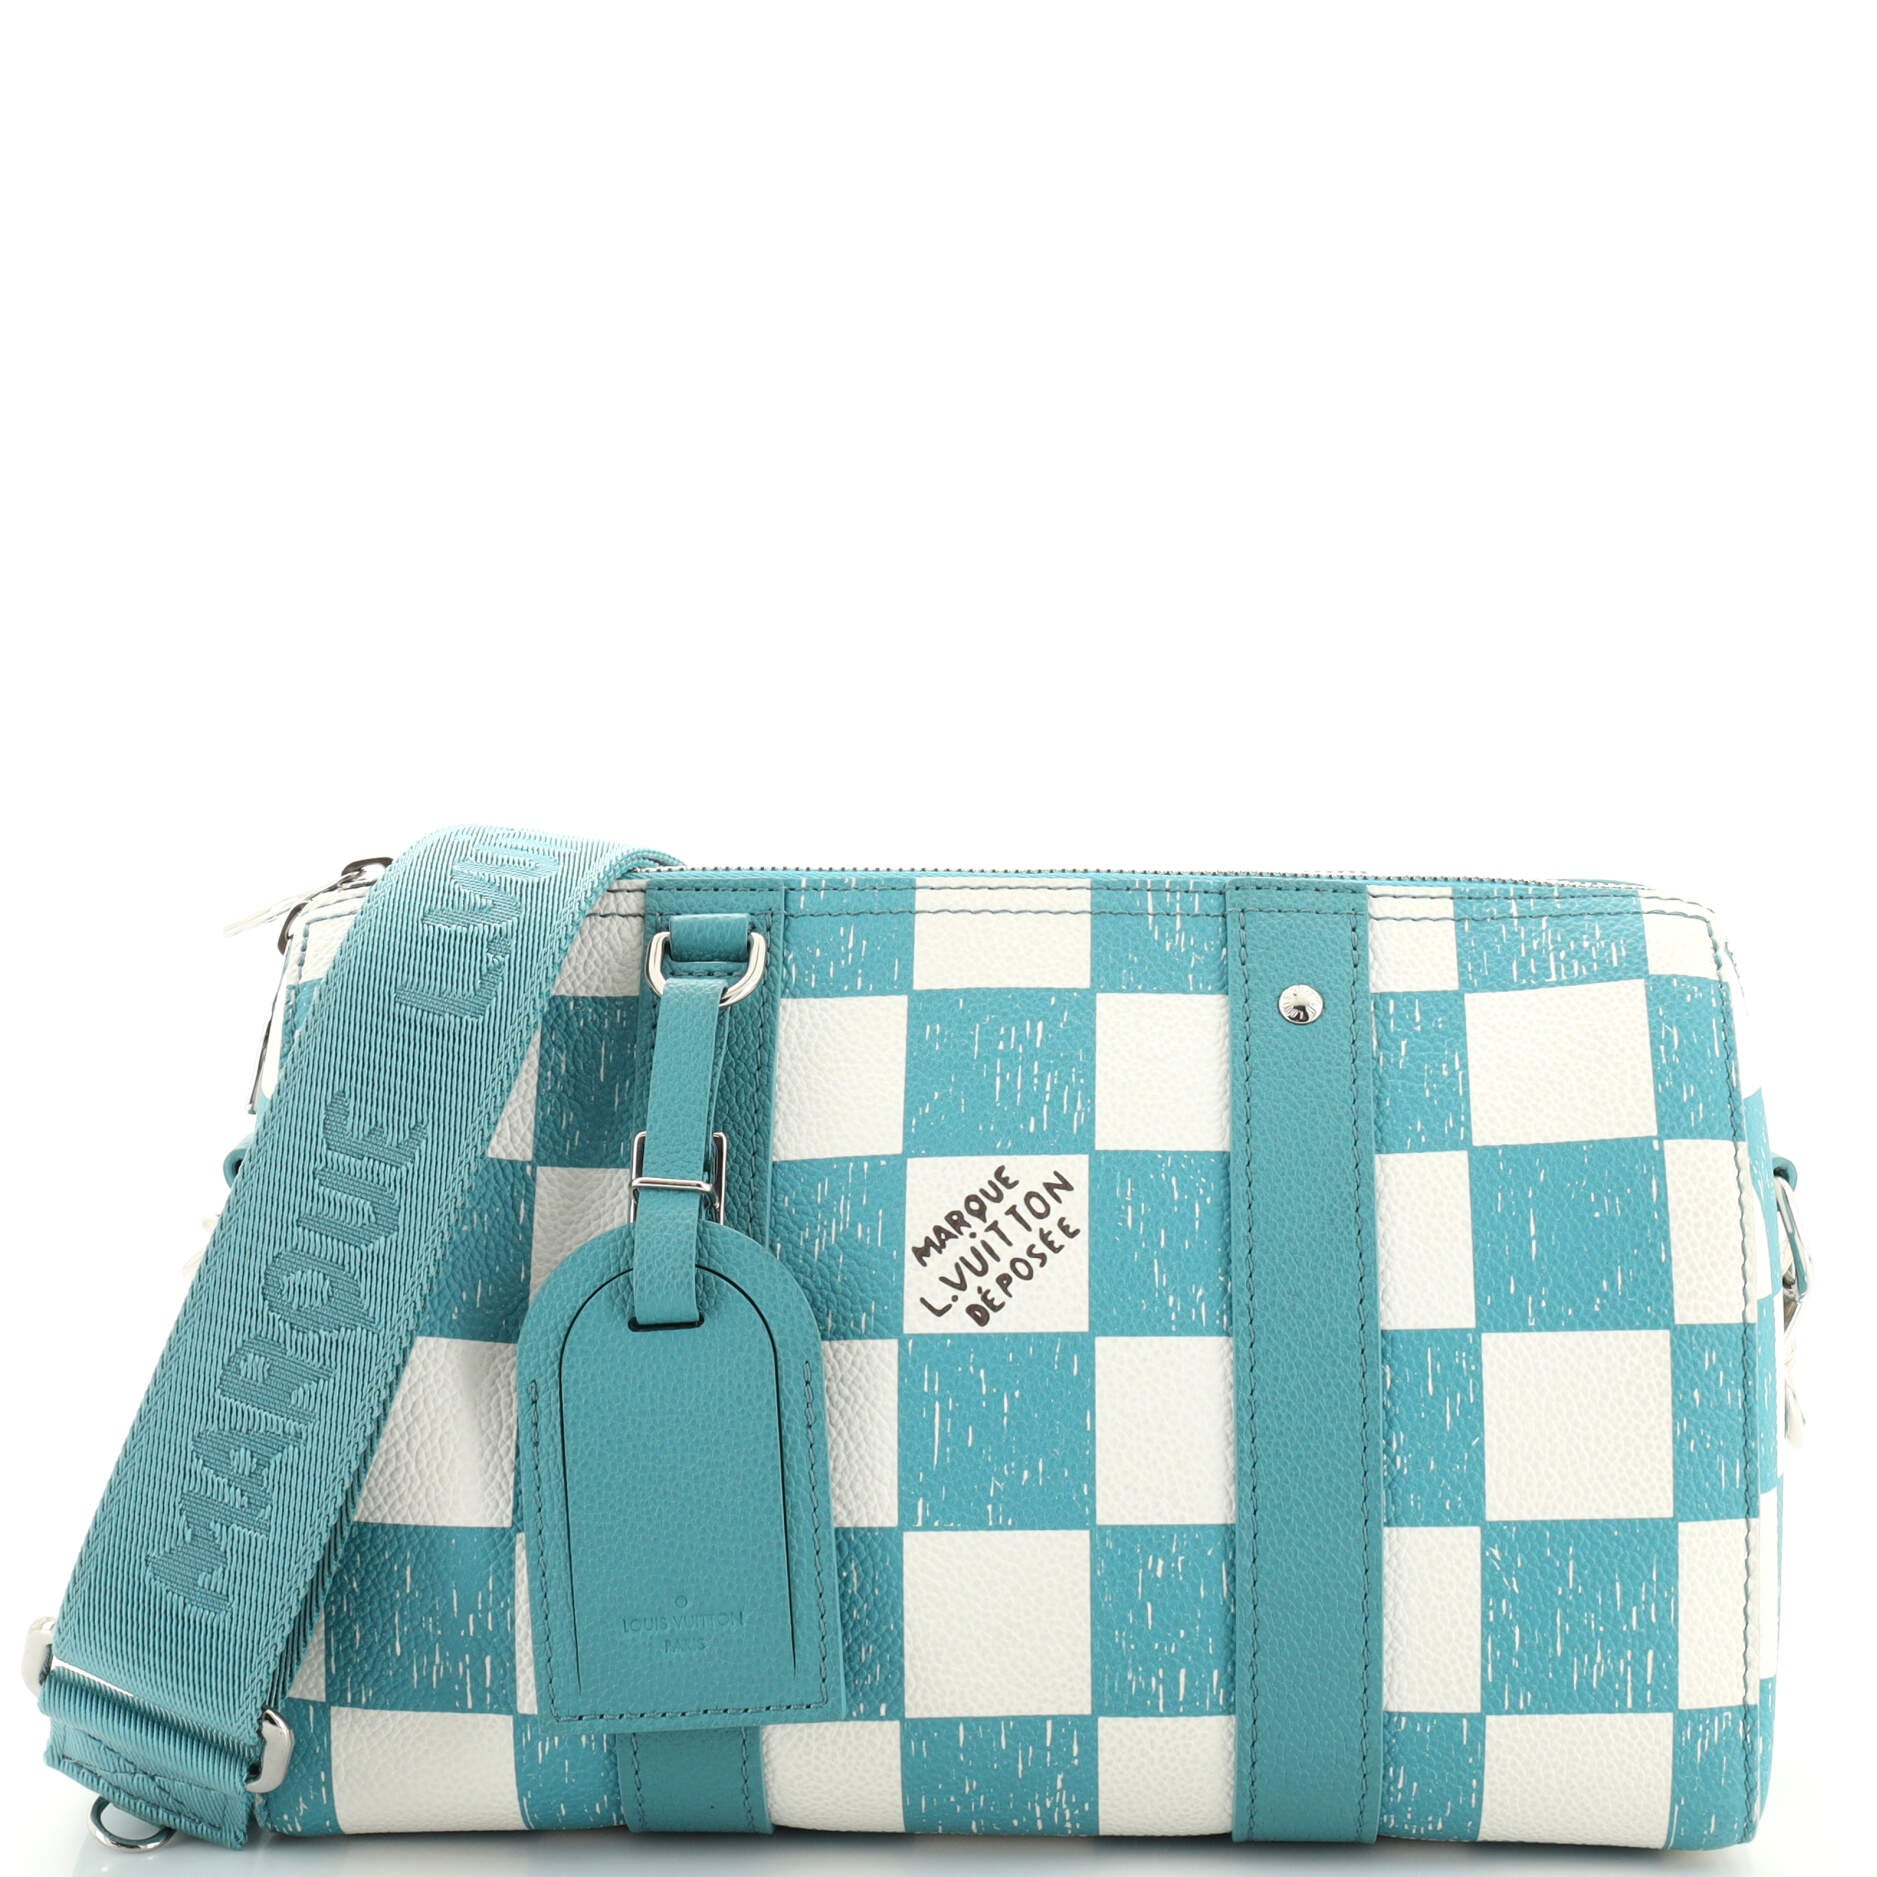 Love this LV Bagatelle bag : r/handbags